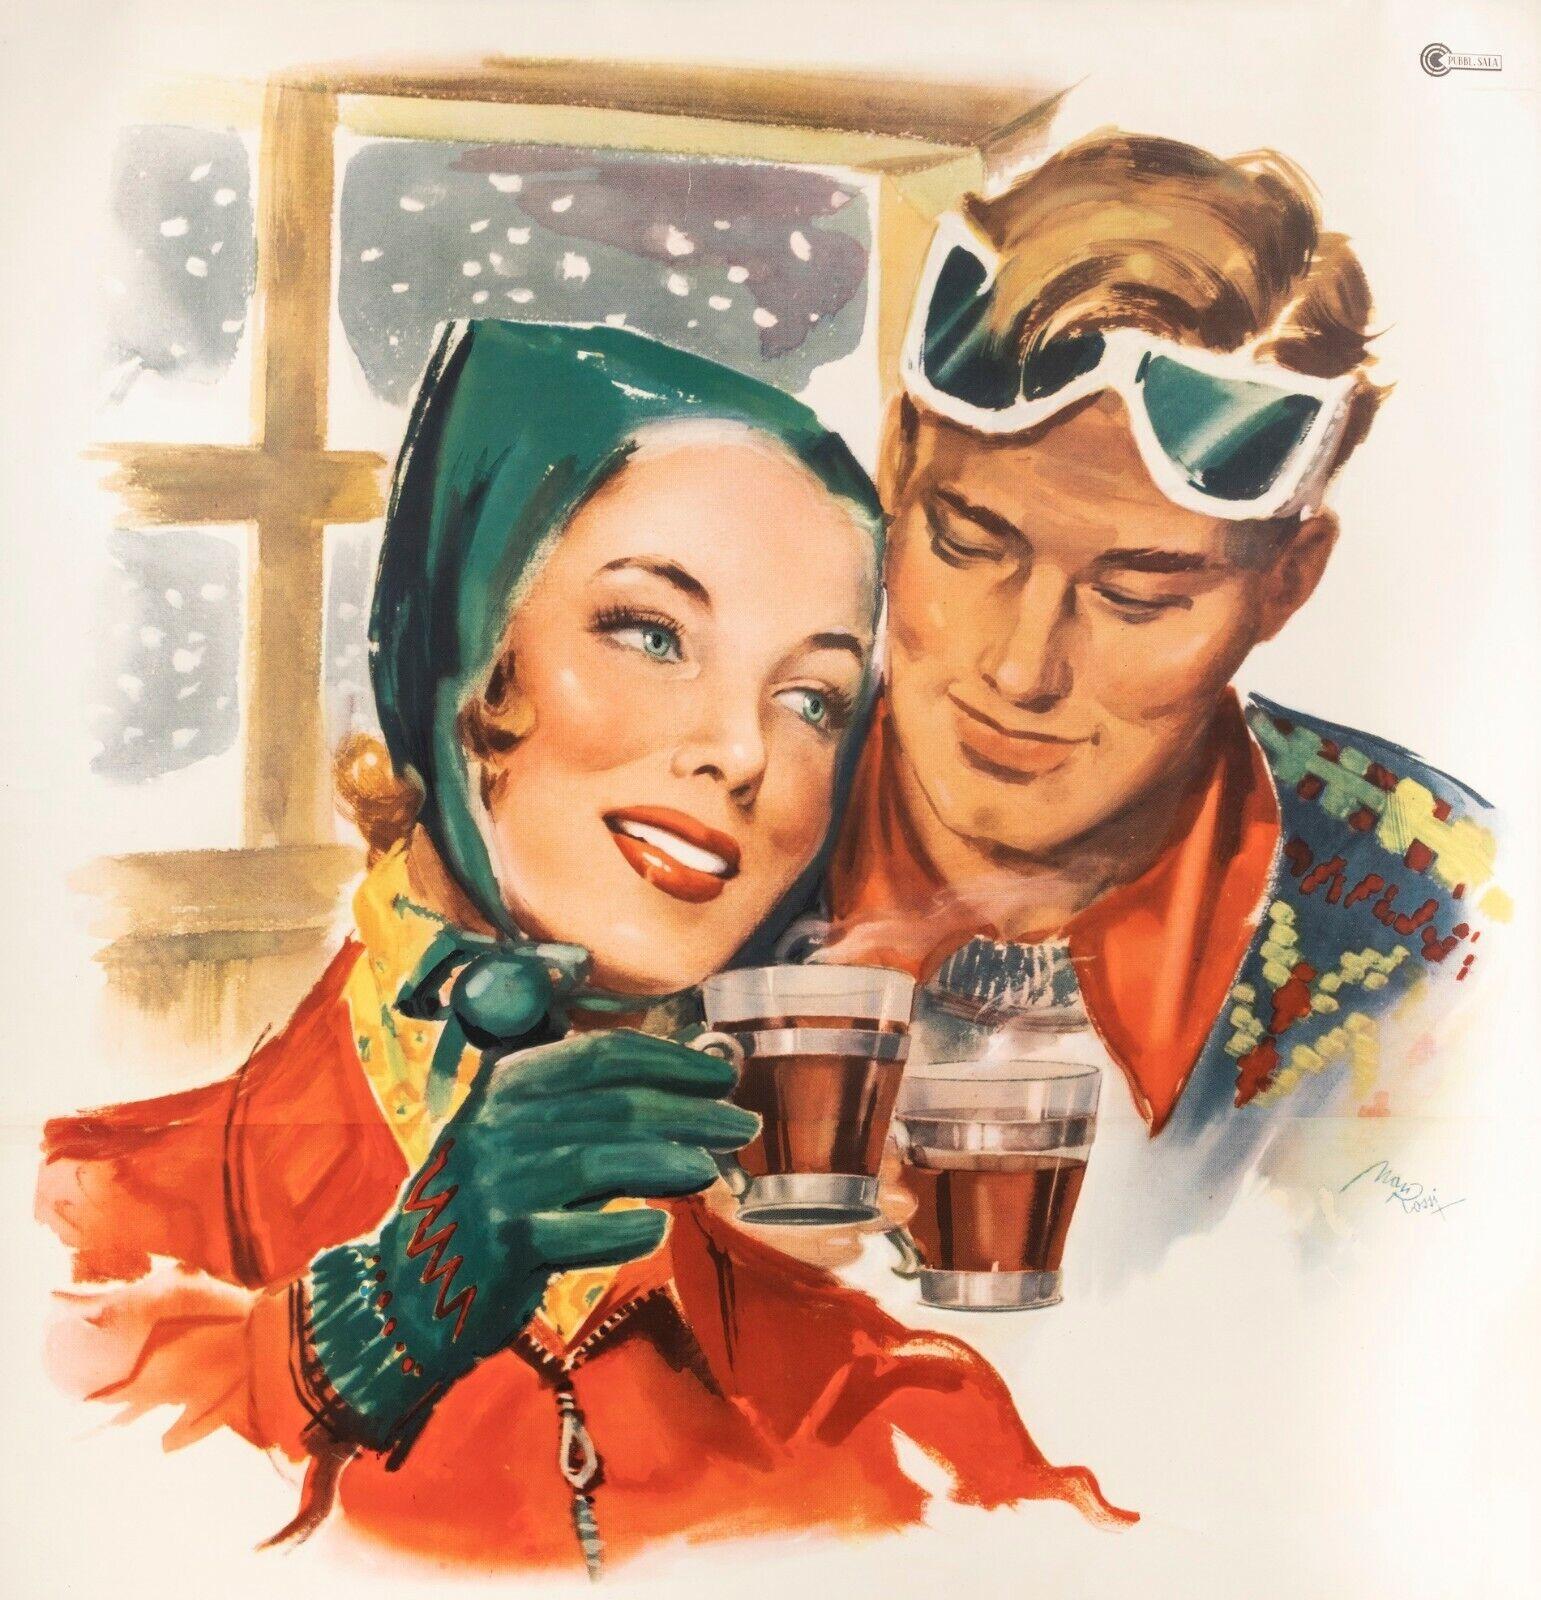 Original Vintage Poster-Rossi M.-China Martini-Quinquina-Ski, 1950

Affiche de promotion pour l'apéritif italien China Martini.

Il peut également être bu chaud, mélangé à de l'eau tiède citronnée. Cela est mis en évidence dans cette affiche, où